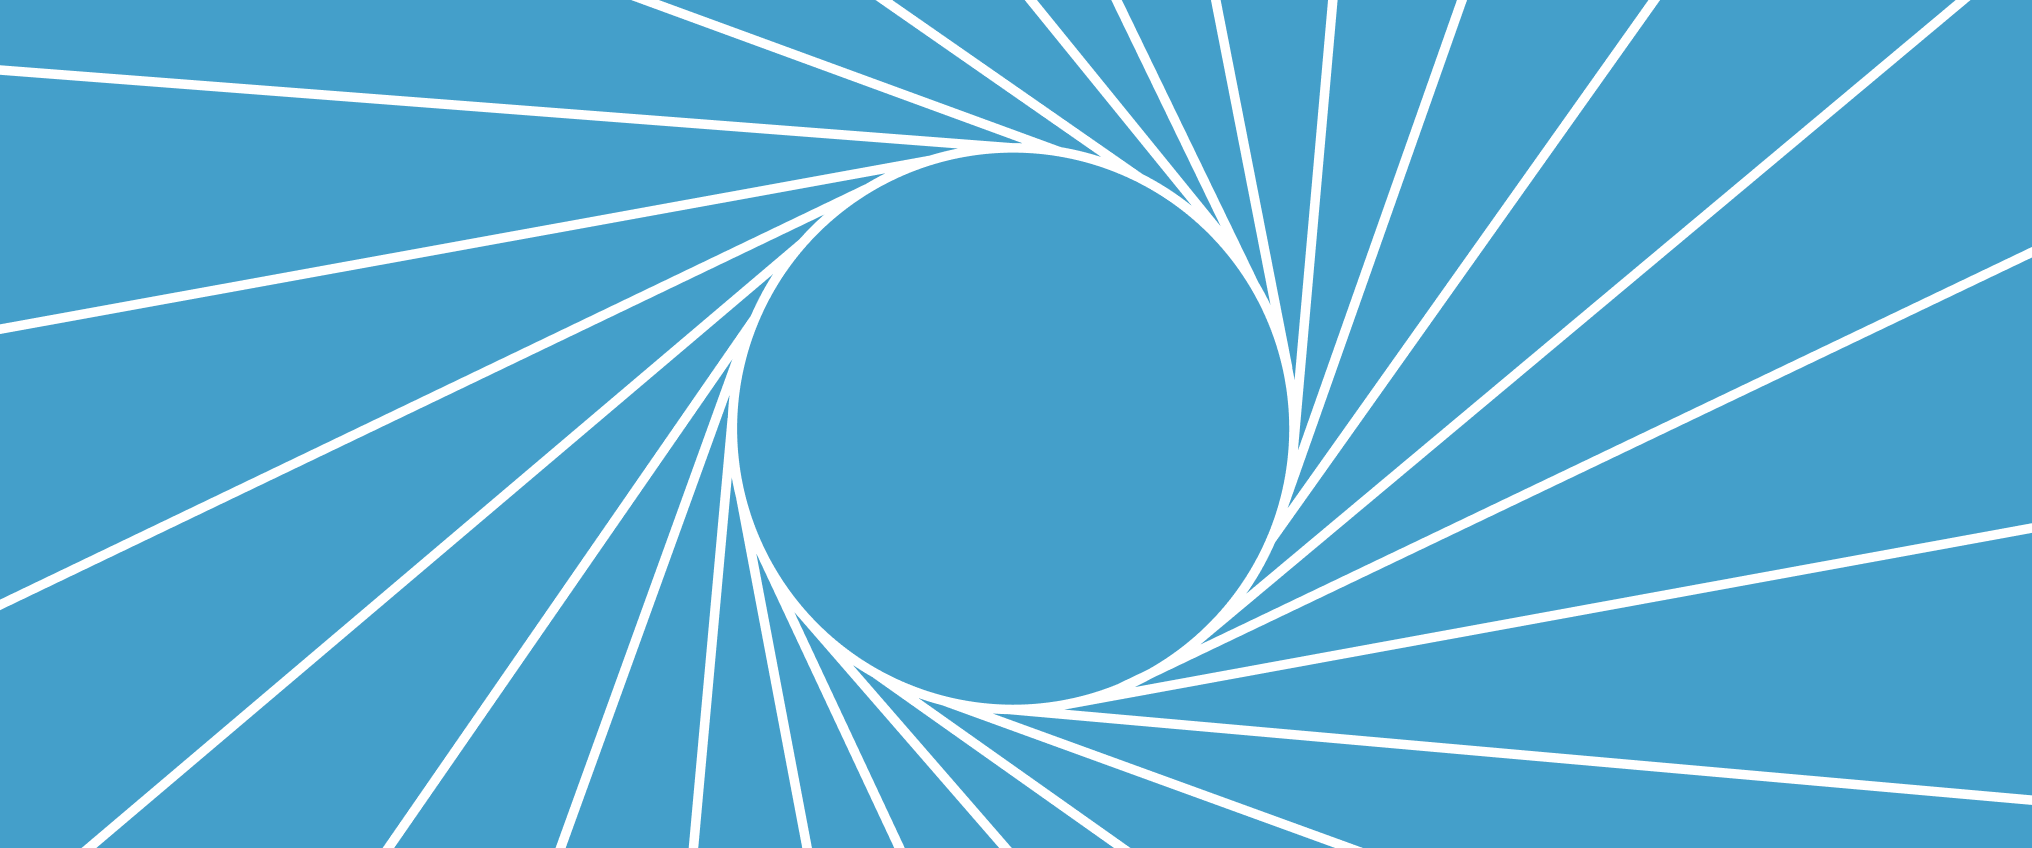 Abstract circle image